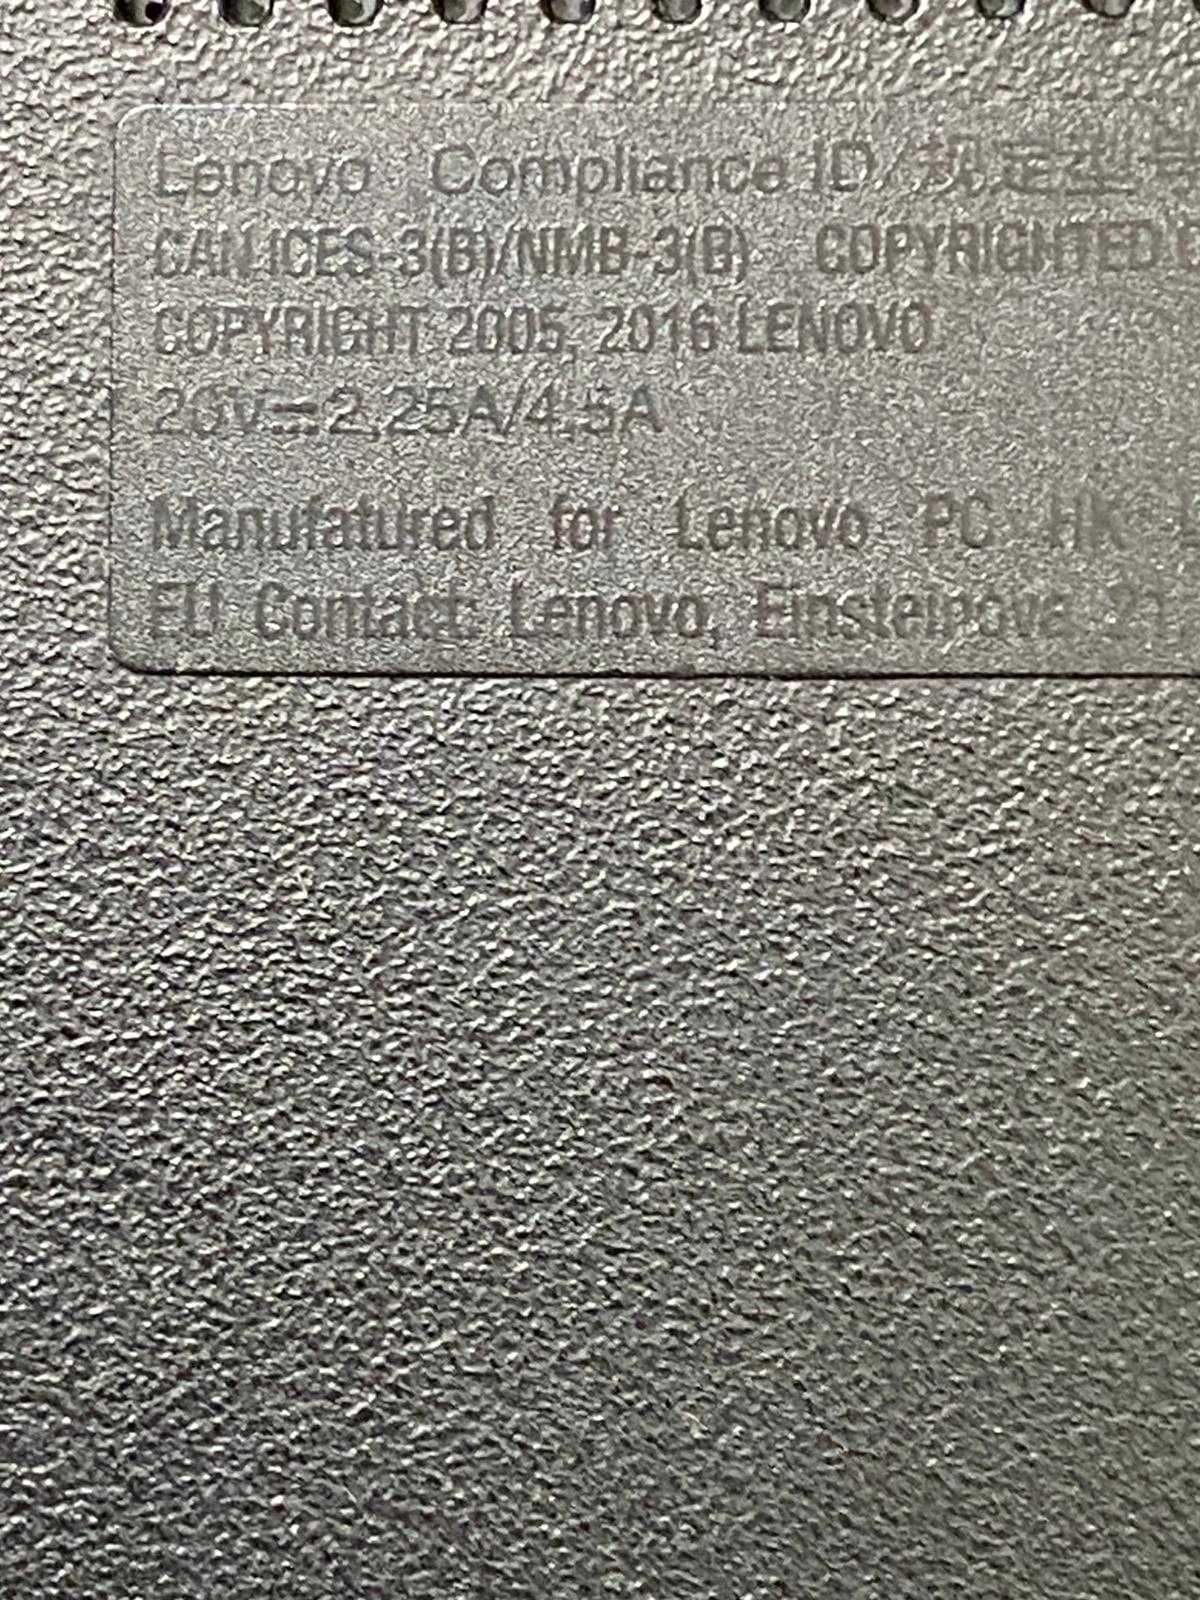 Laptop Lenovo Thinkpad 13 ,i3-7100u